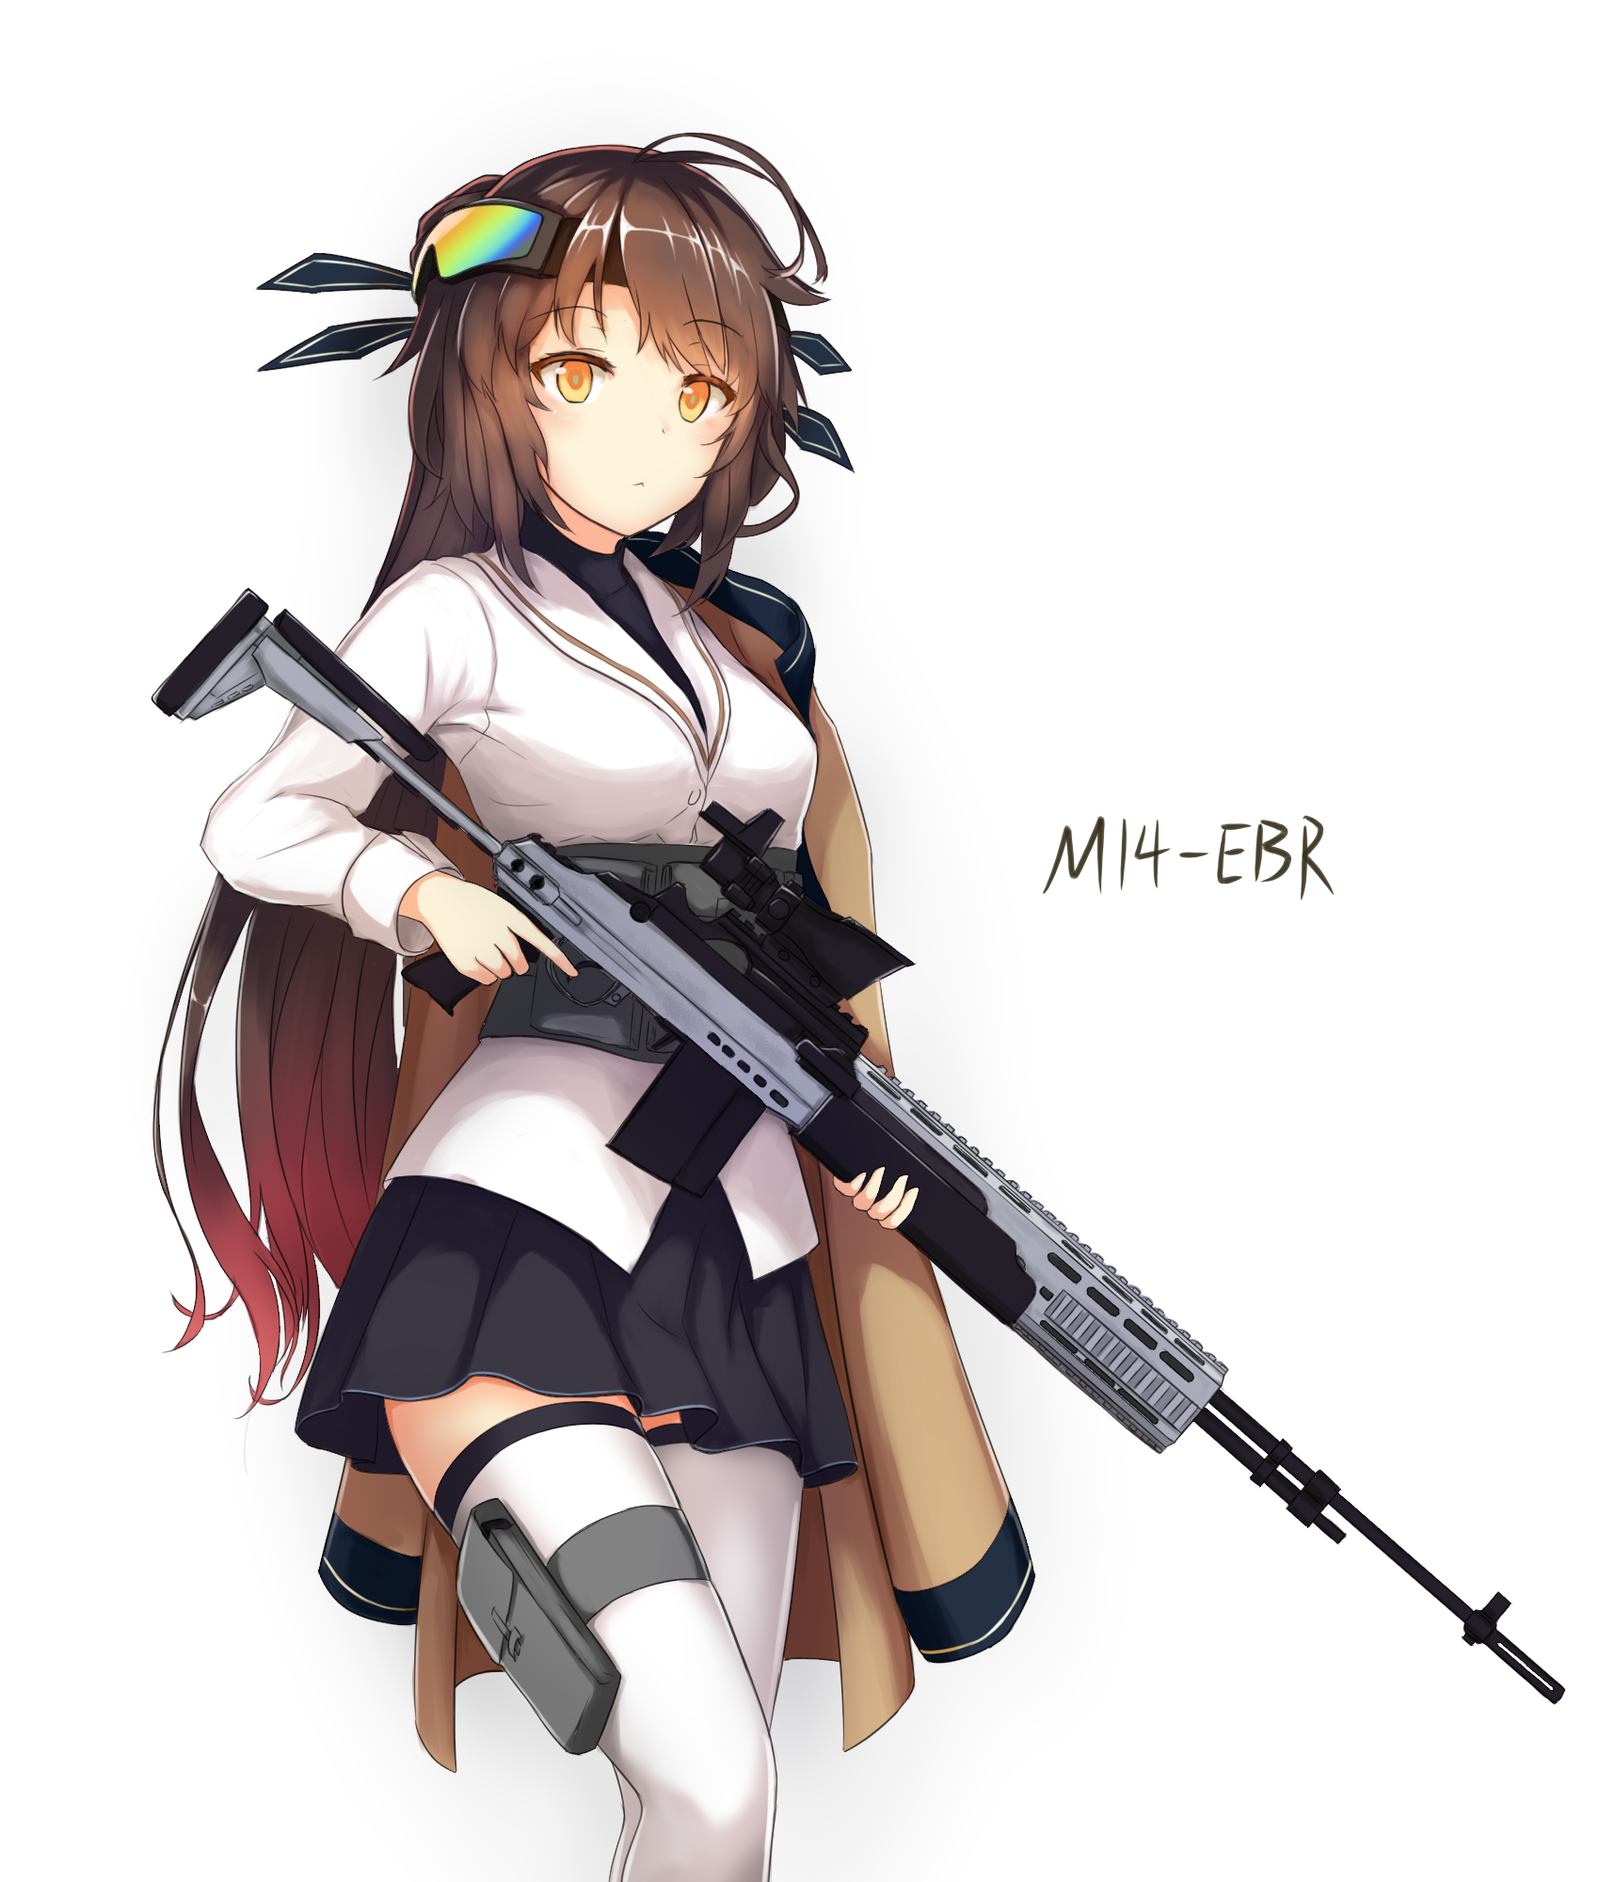 M14 (Girls' Frontline) - Anime, Art, Anime art, Girls frontline, M14